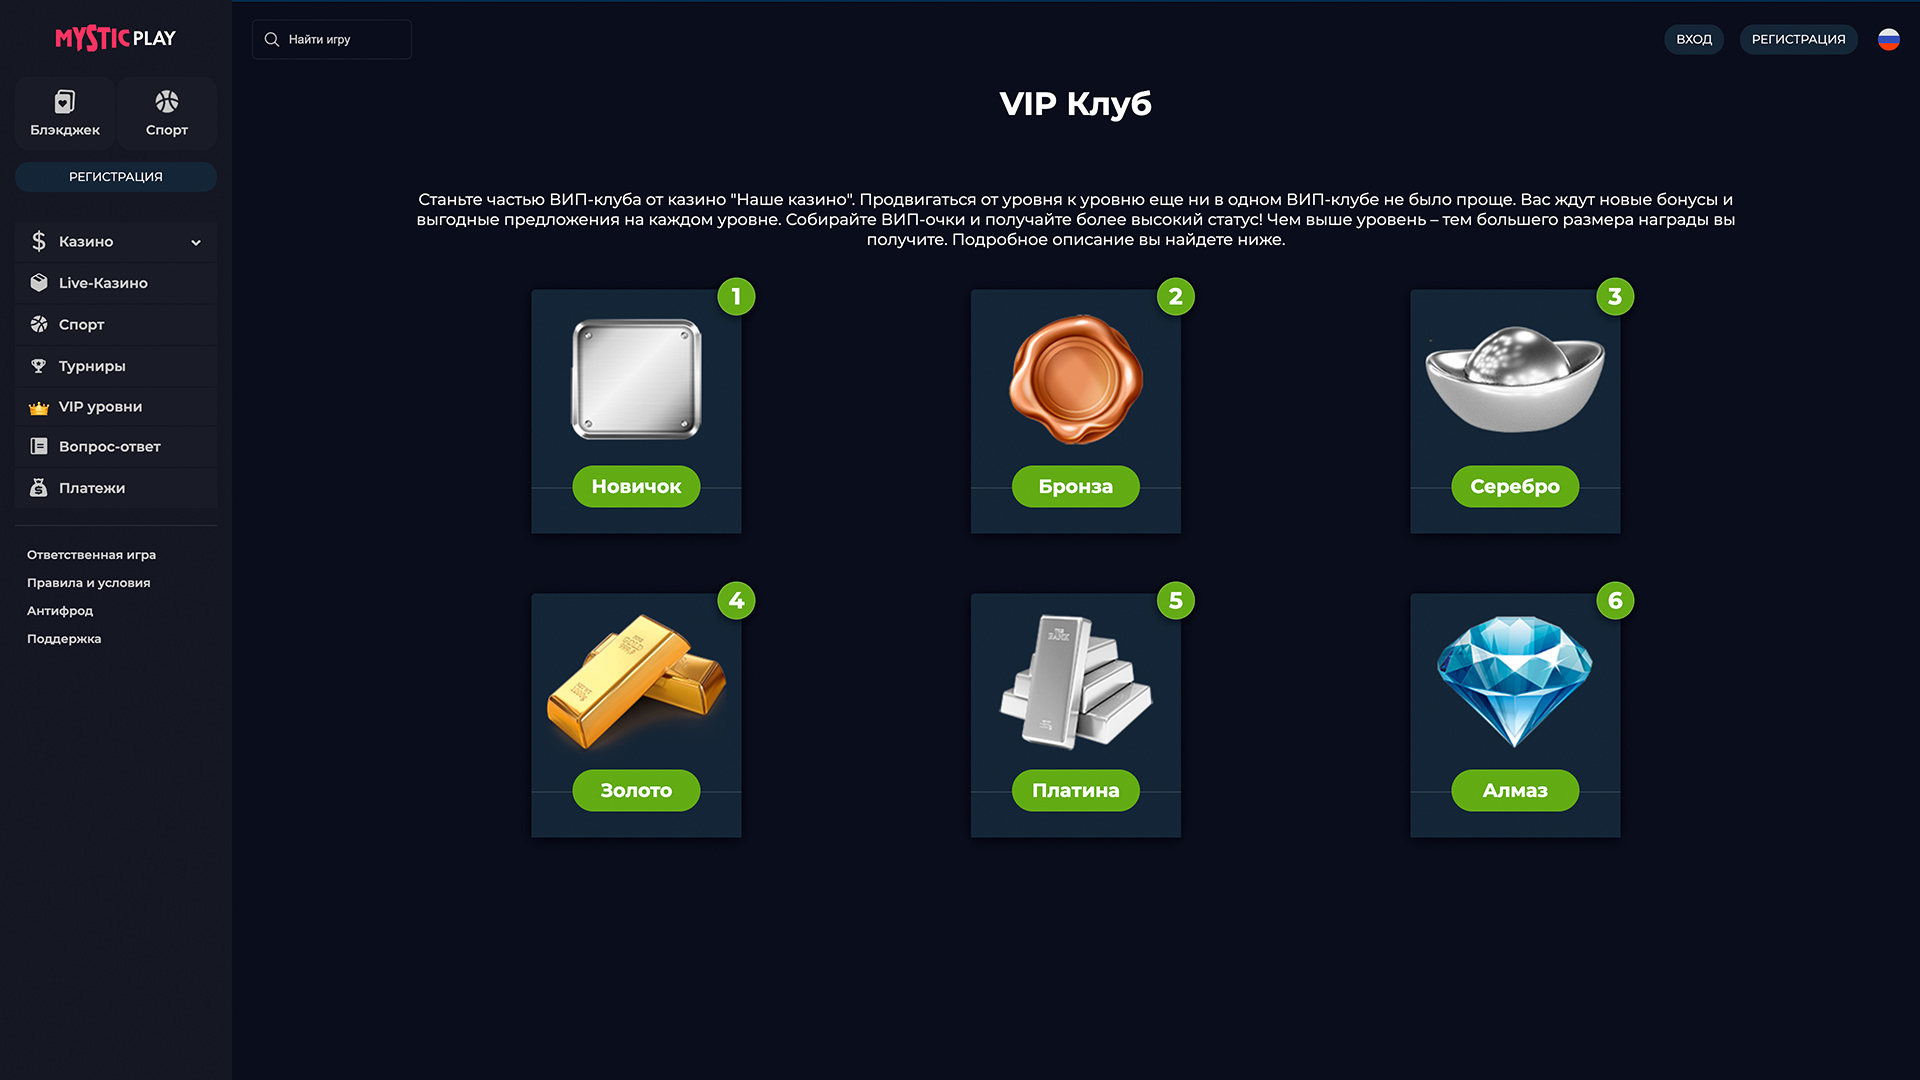 MysticPlay 賭場通過投注模塊和加密遊戲在線購買